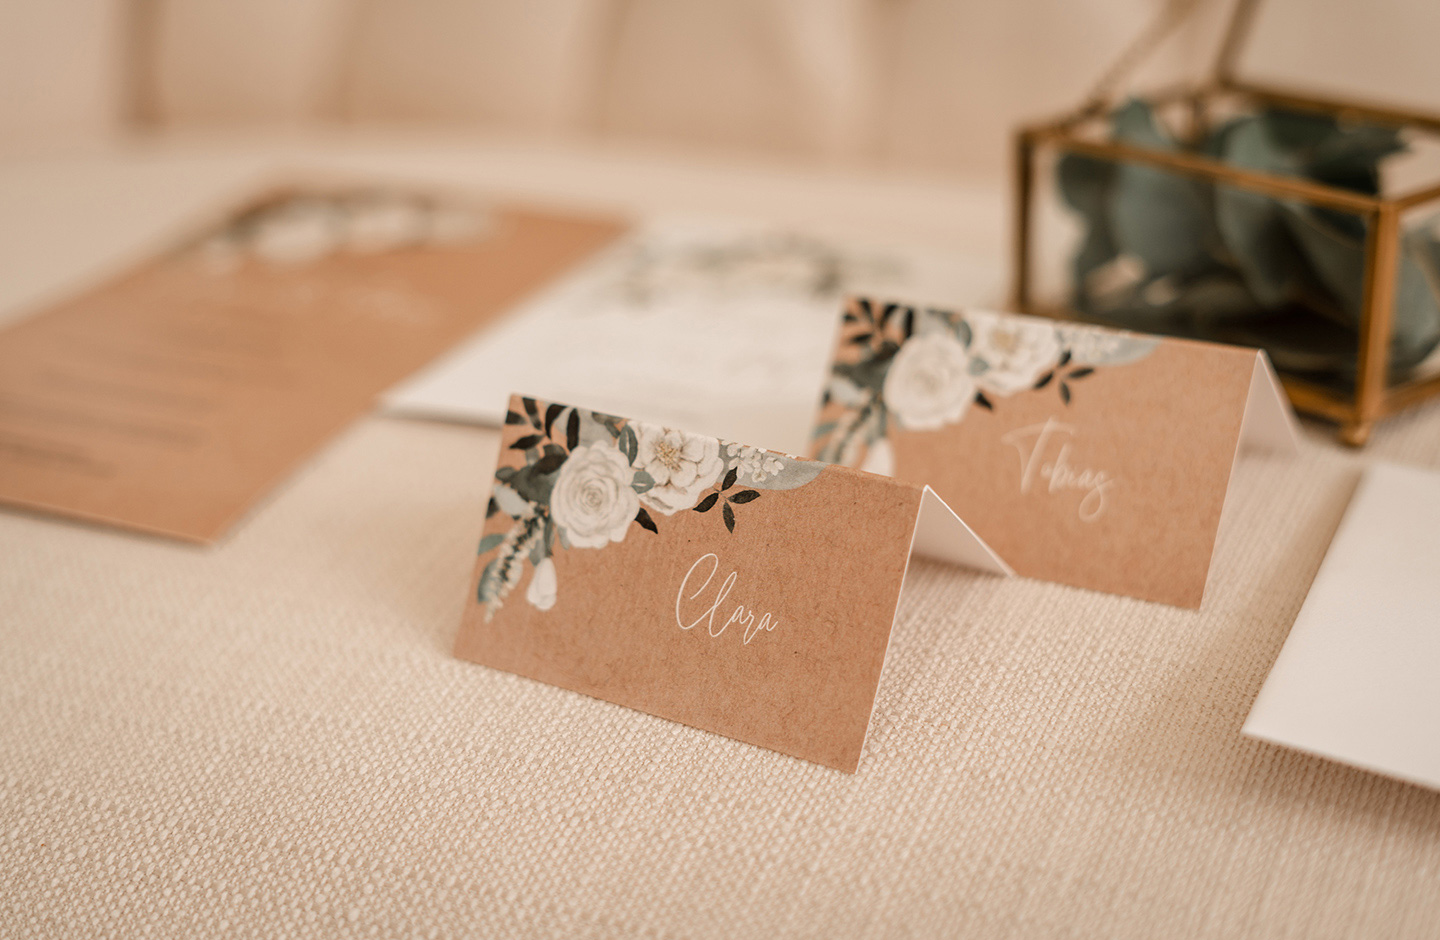  Die Hochzeitspapeterie wurde auf dem cremefarbenen Sofa für ein Foto platziert. Die im Kraftpapier-Look mit den Namen der Gäste beschrifteten Tischkärtchen greifen das Design der weißen Blüten und grünen Blätter auf.